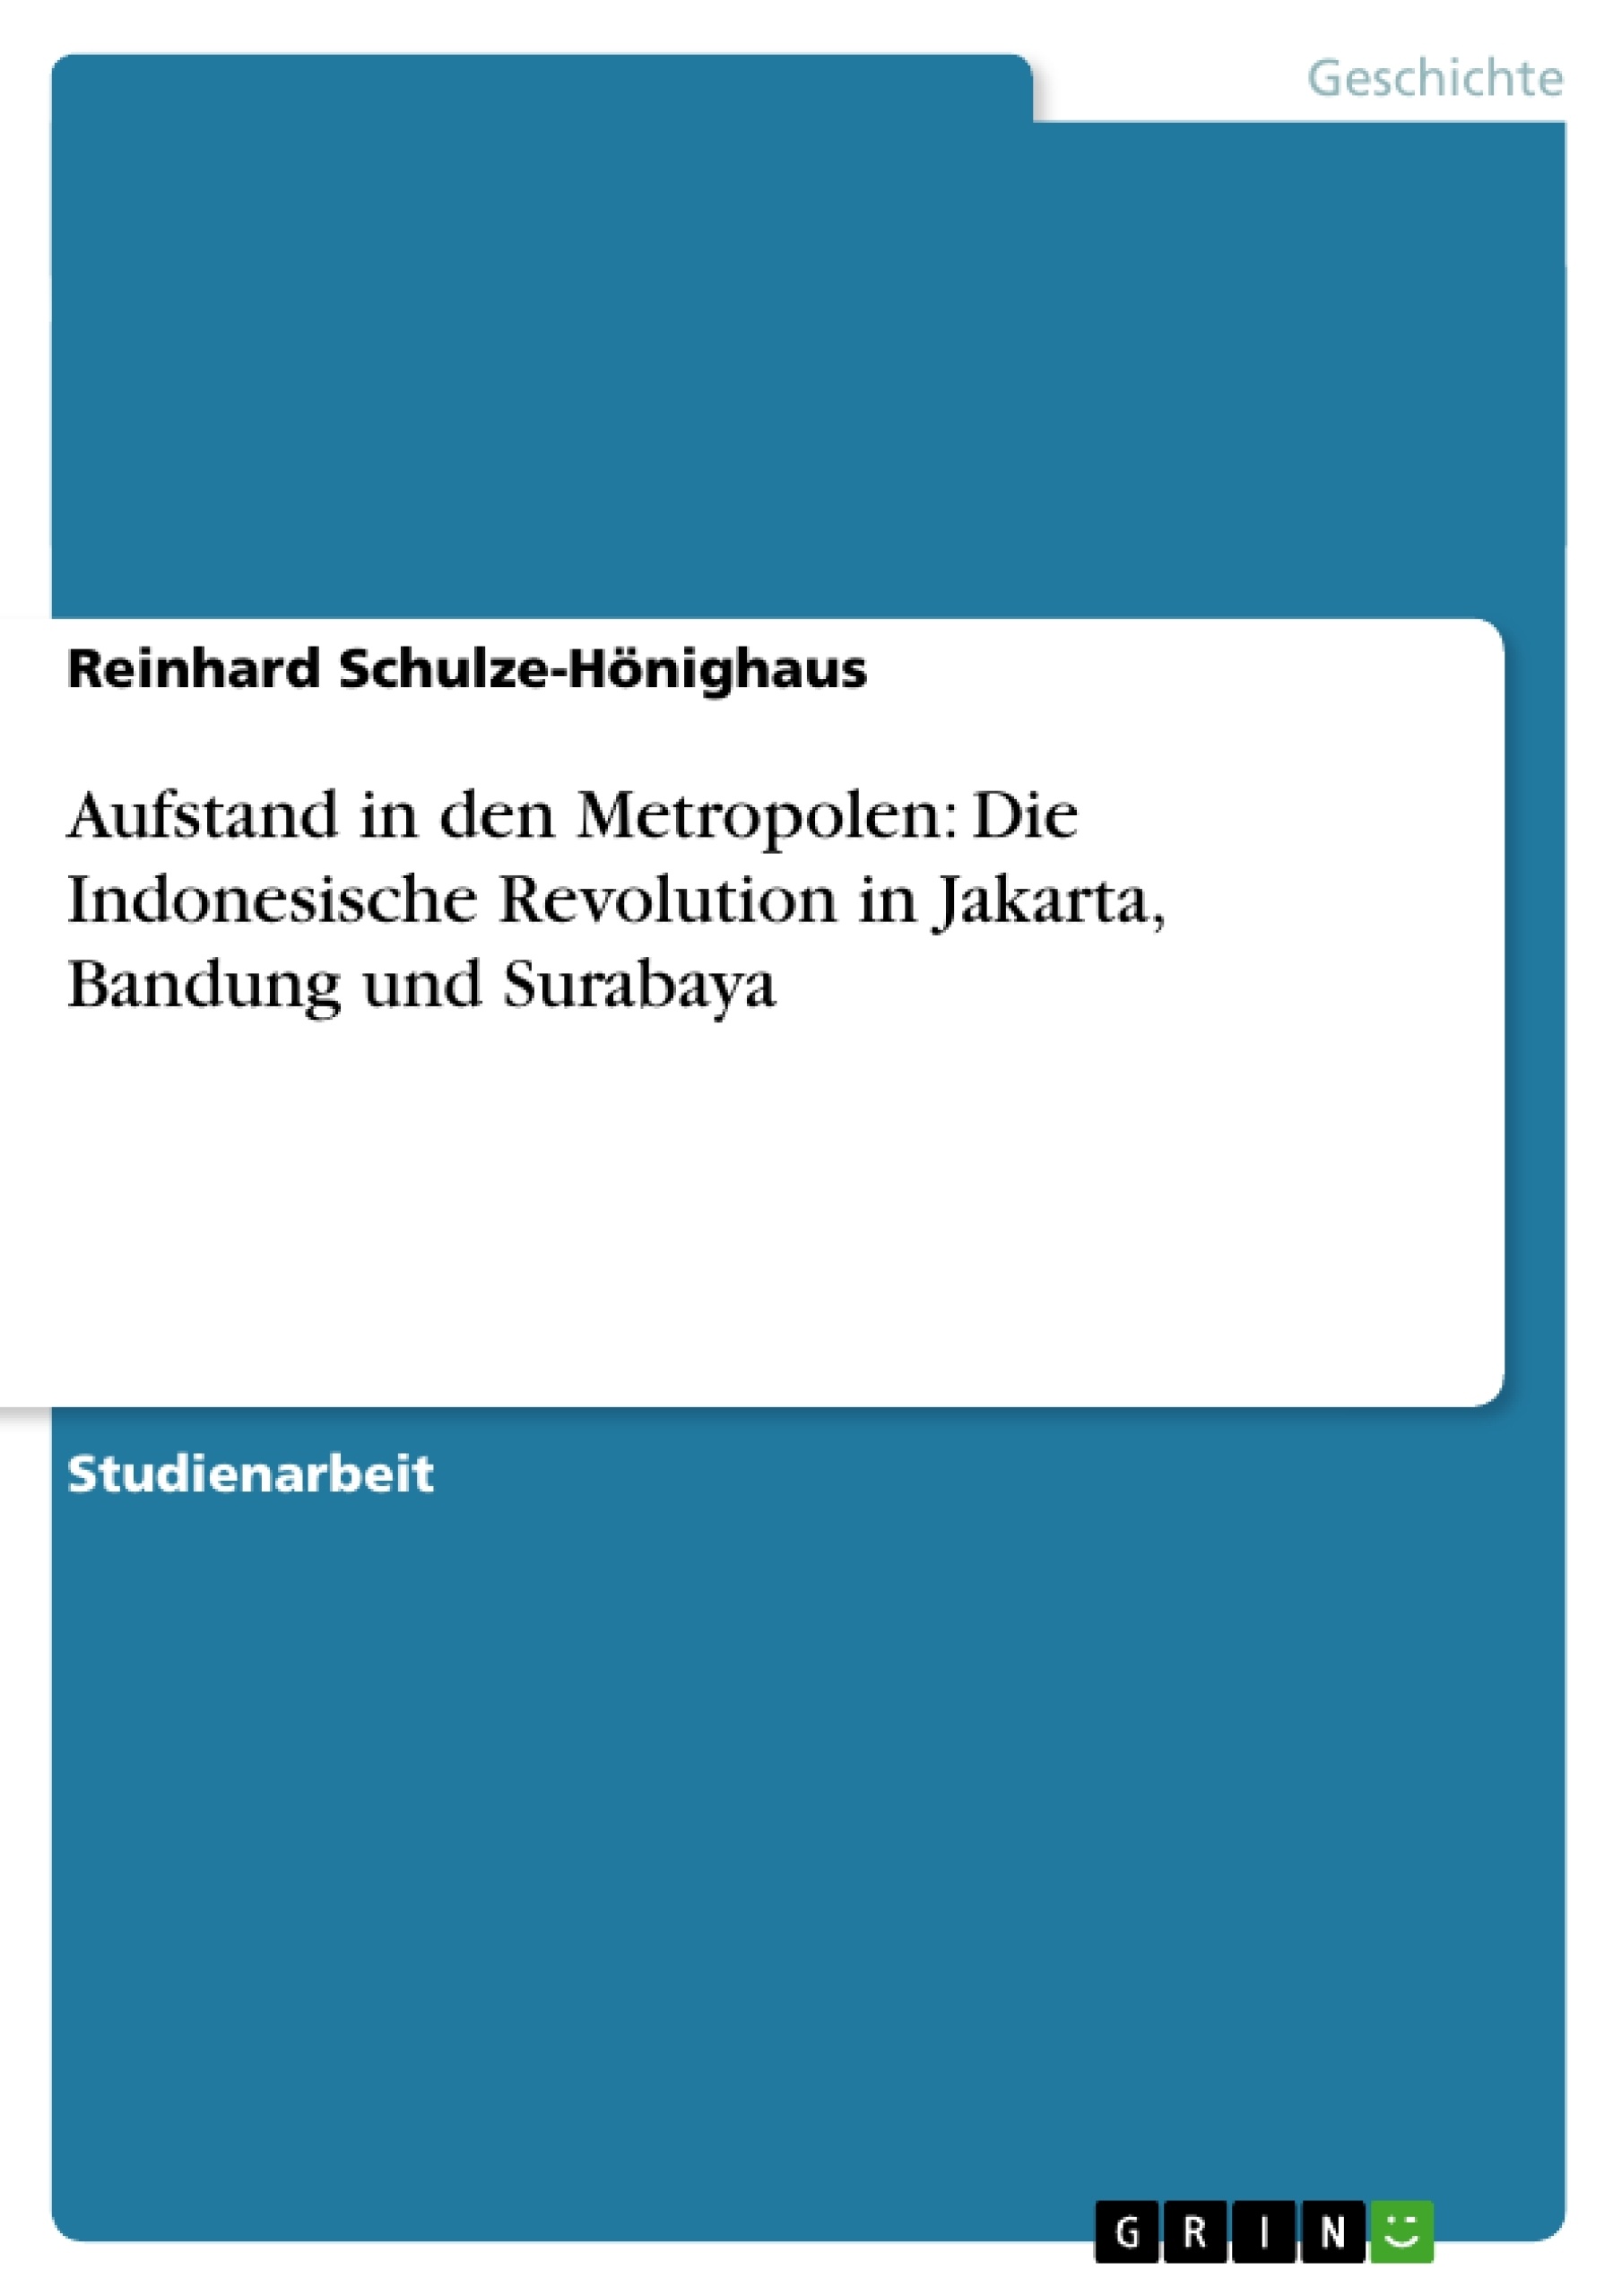 Titre: Aufstand in den Metropolen: Die Indonesische Revolution in Jakarta, Bandung und Surabaya